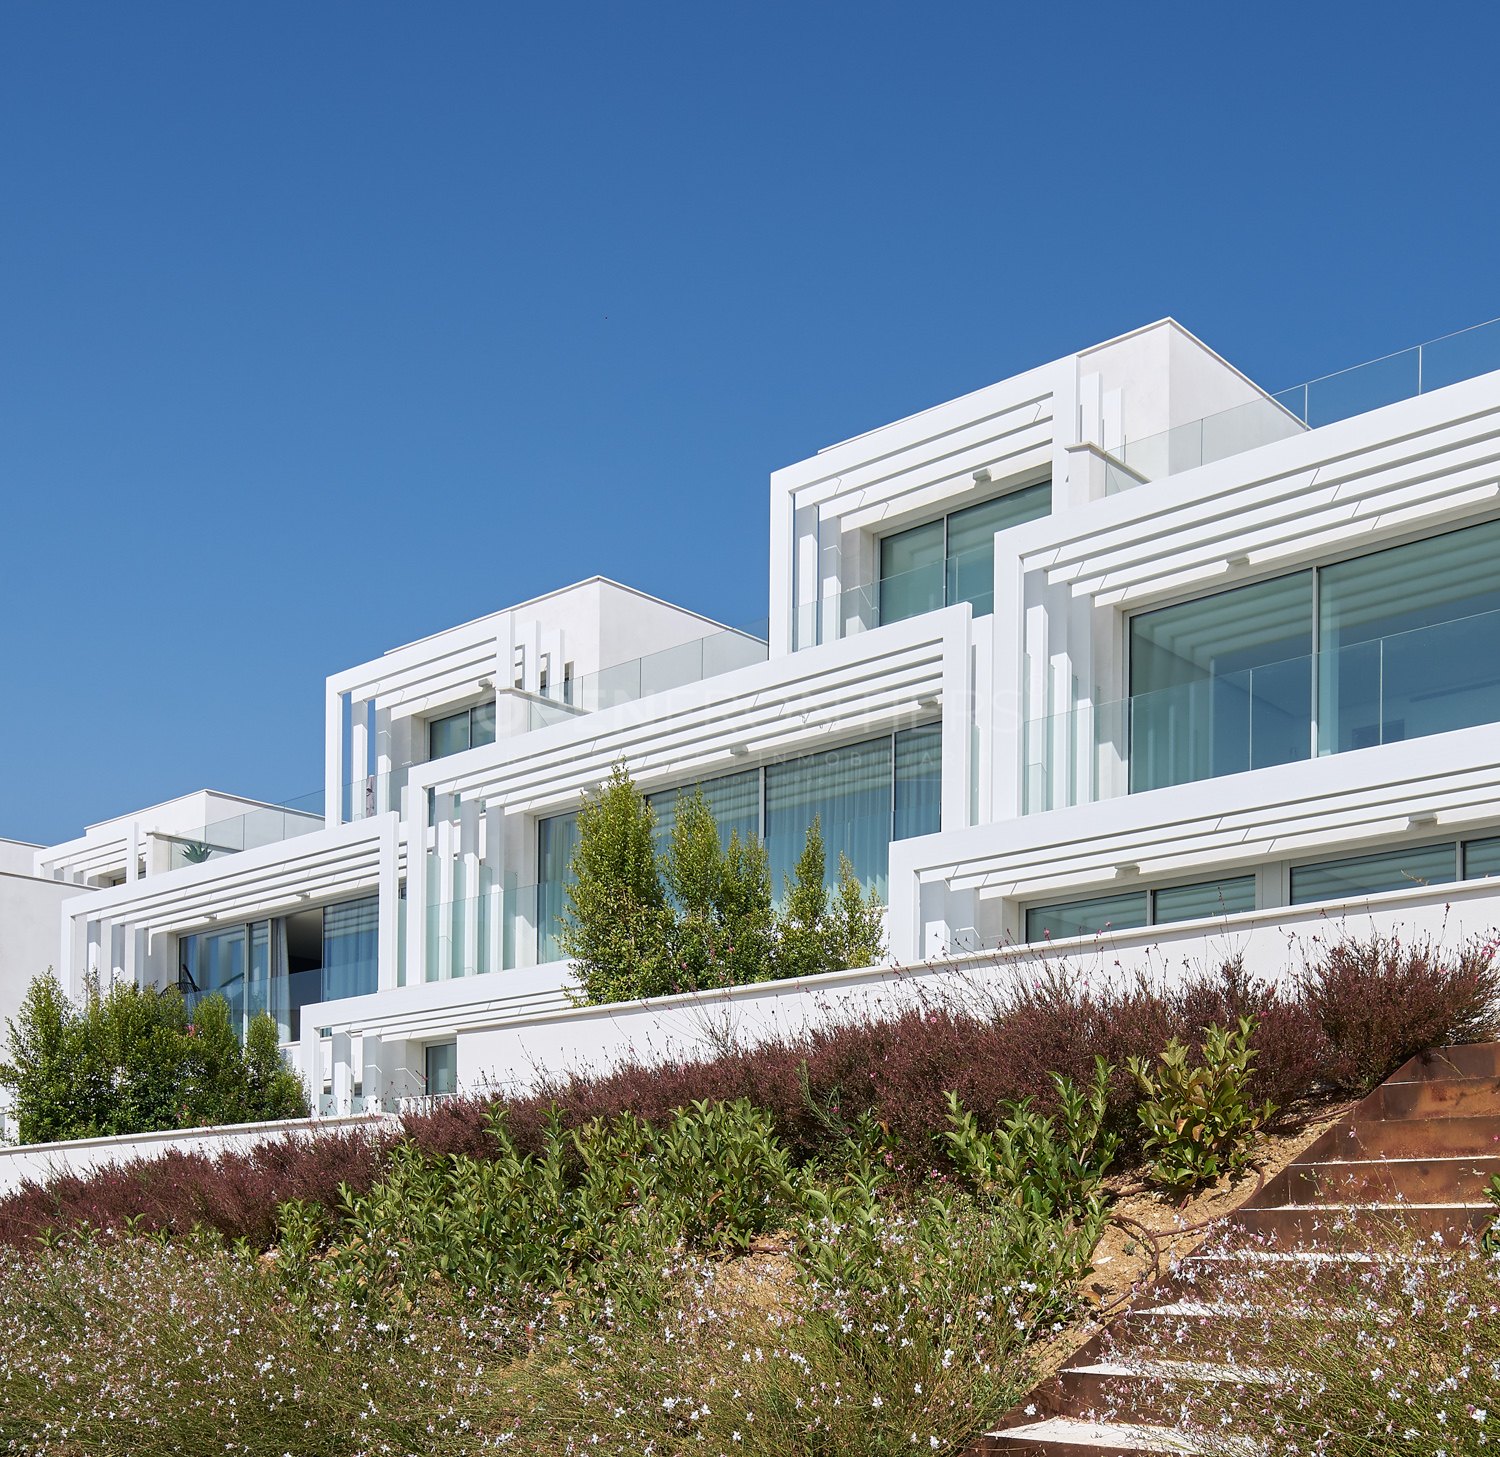 La Finca, exclusivas villas adosadas de diseño en primera línea de golf en Sotogrande